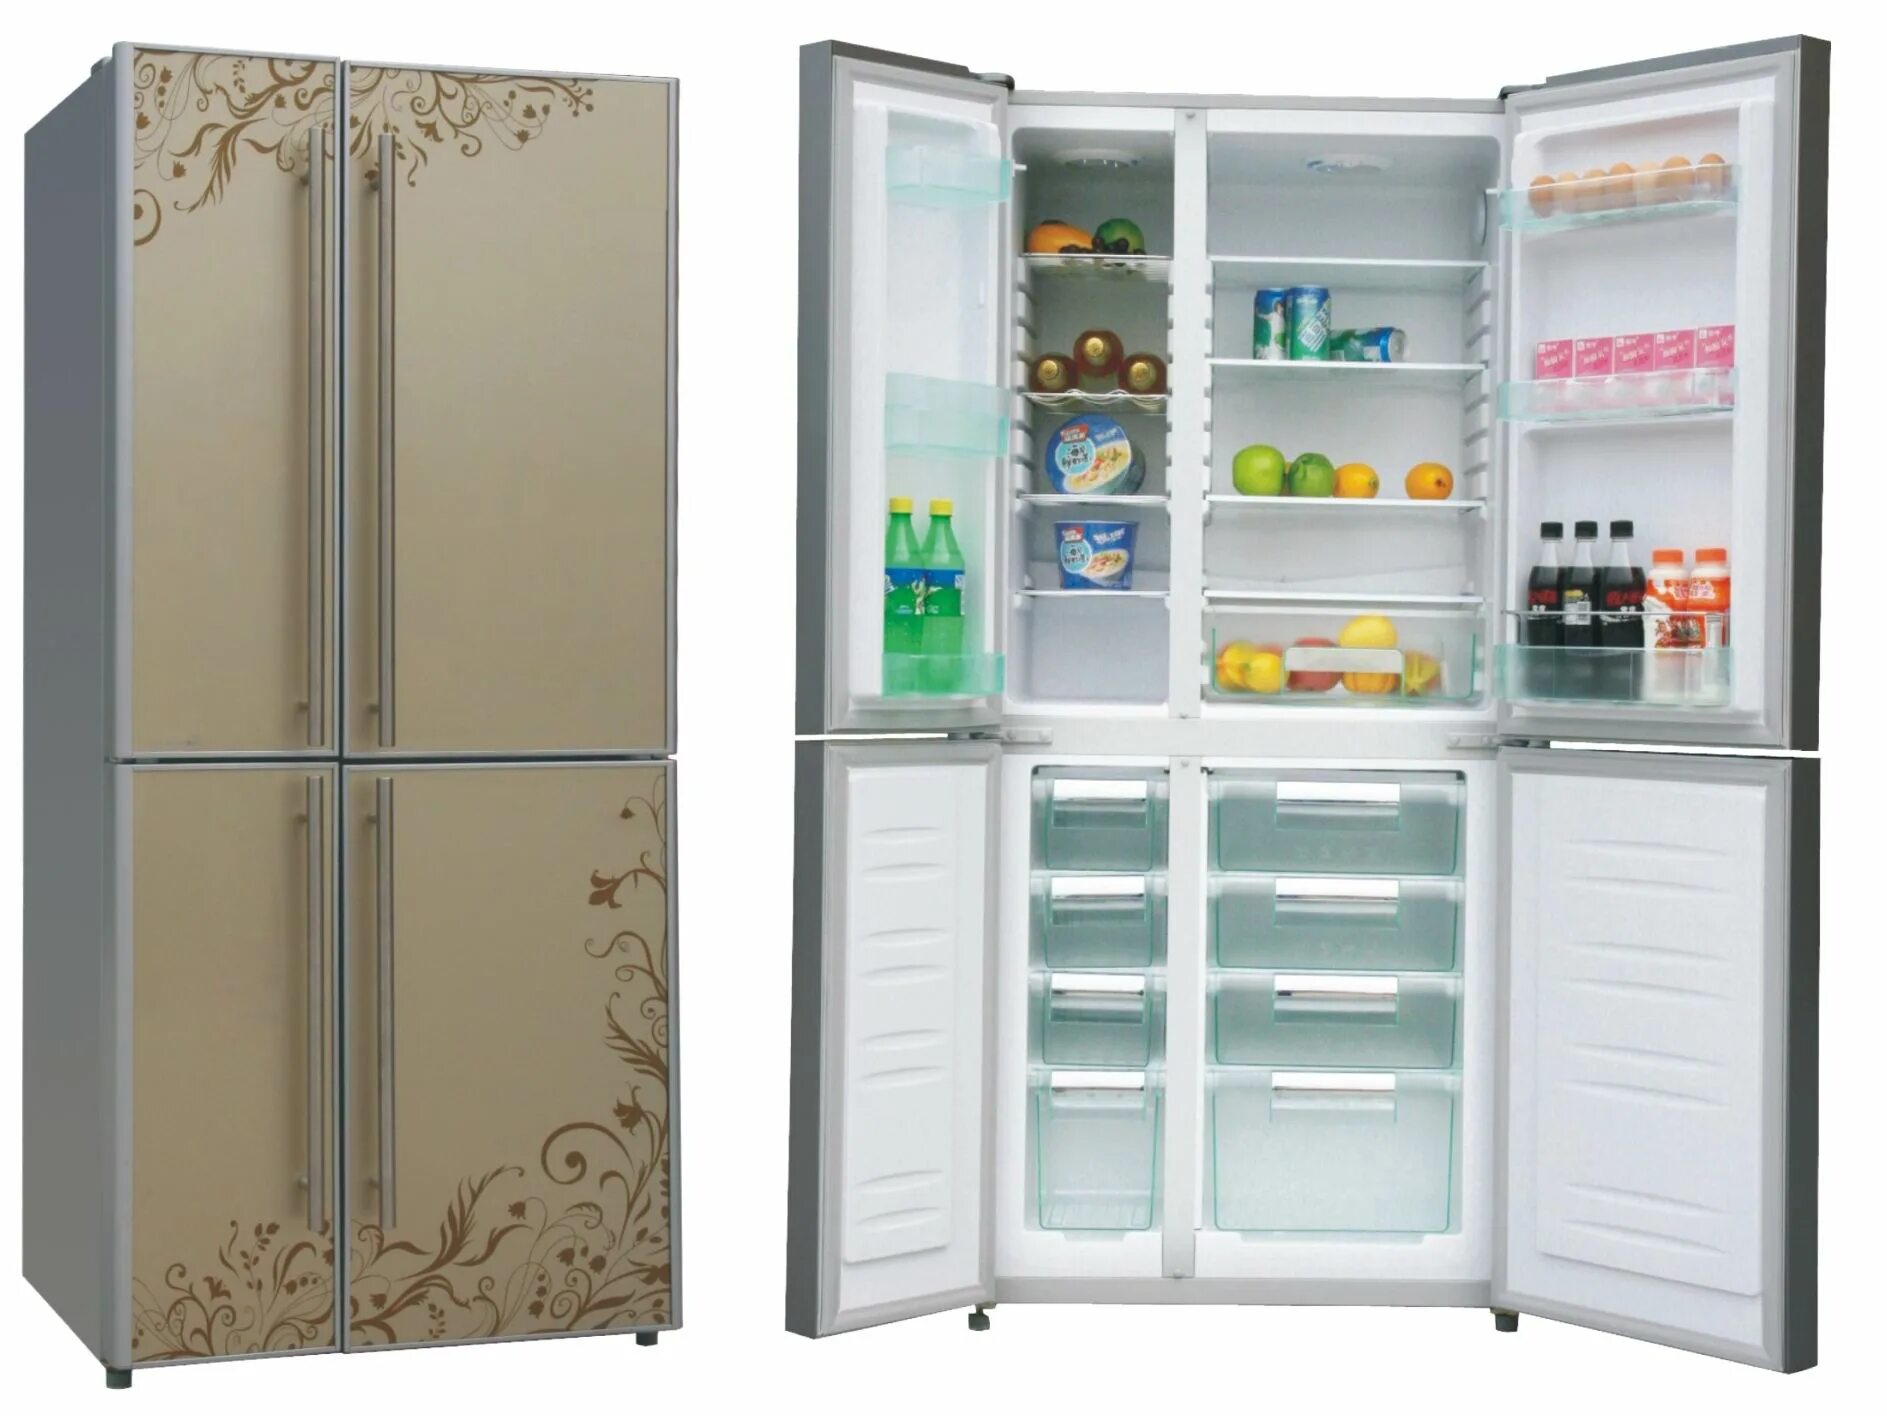 Холодильник (Side-by-Side) Ascoli acdb520wib. Холодильник (Side-by-Side) LG GC-q247cbdc. Холодильник Side by Side с большой морозилкой. Холодильник (Side-by-Side) Thomson ssc30ei32. Купить холодильник тагил